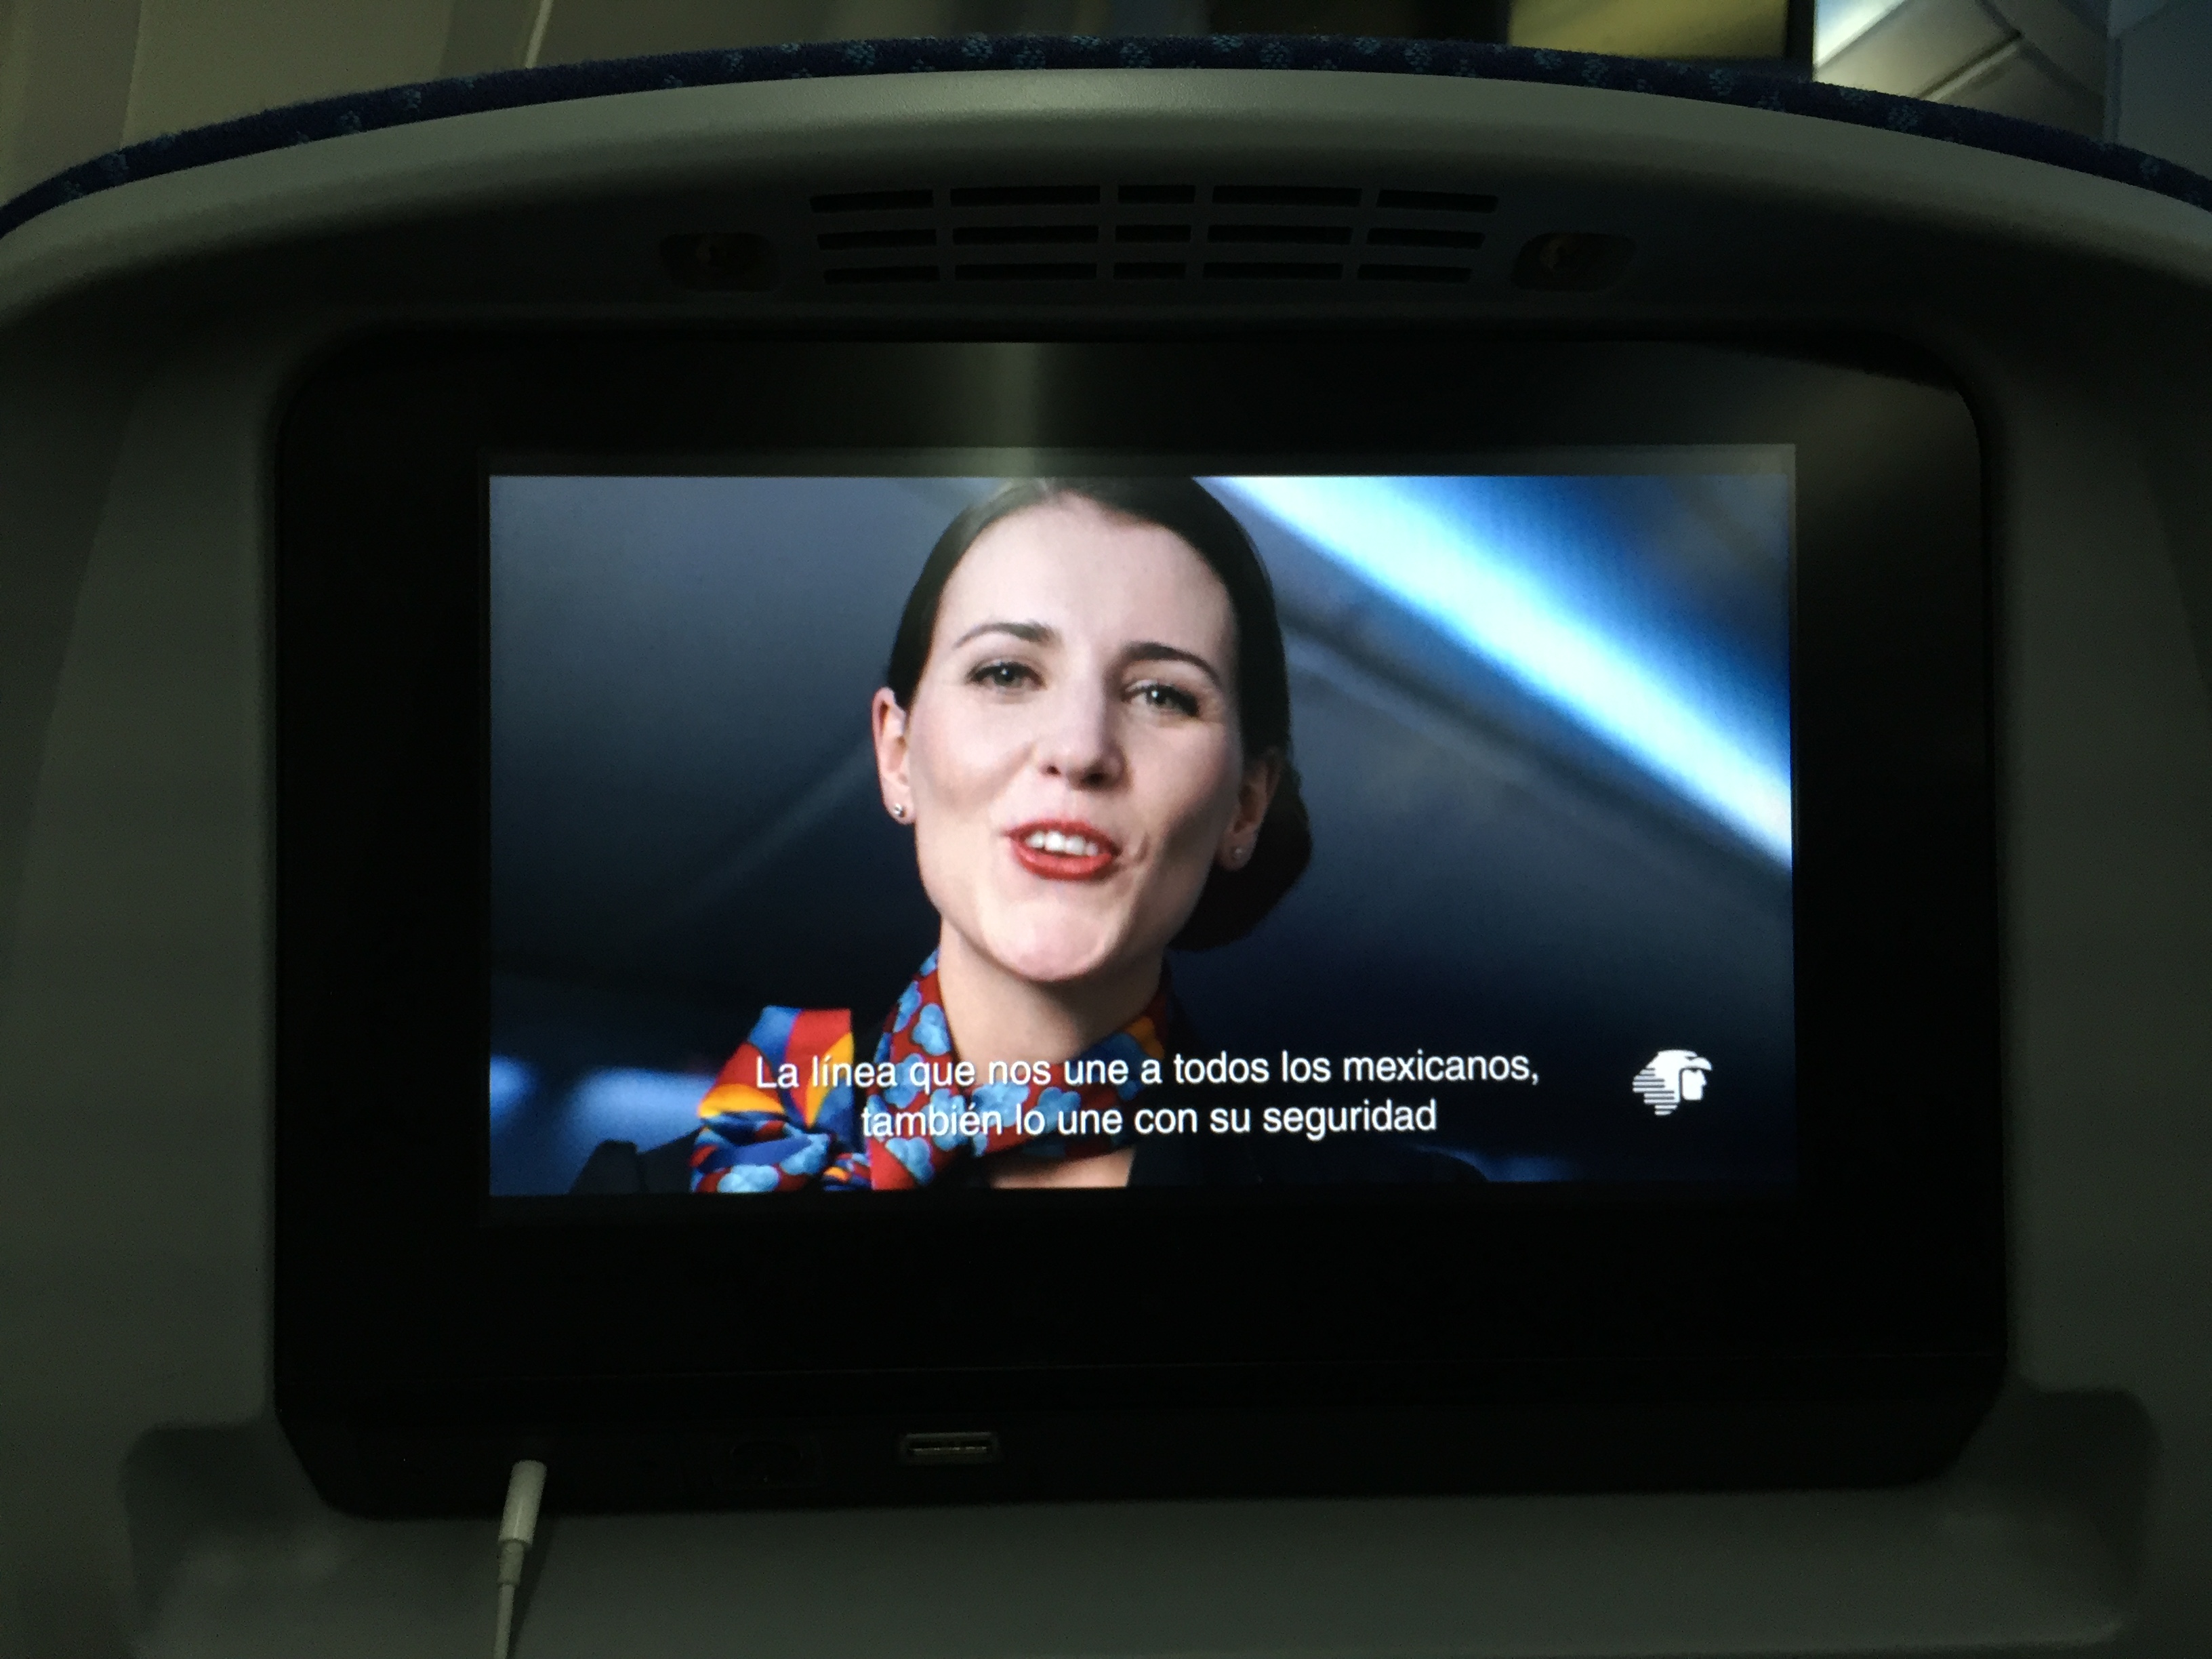 El video de seguridad de Aeromexico, intentá ser creativo como el de Air New Zealand y Delta. Sin embargo solo en detalles. A mi punto de vista: se queda demasiado conservador.